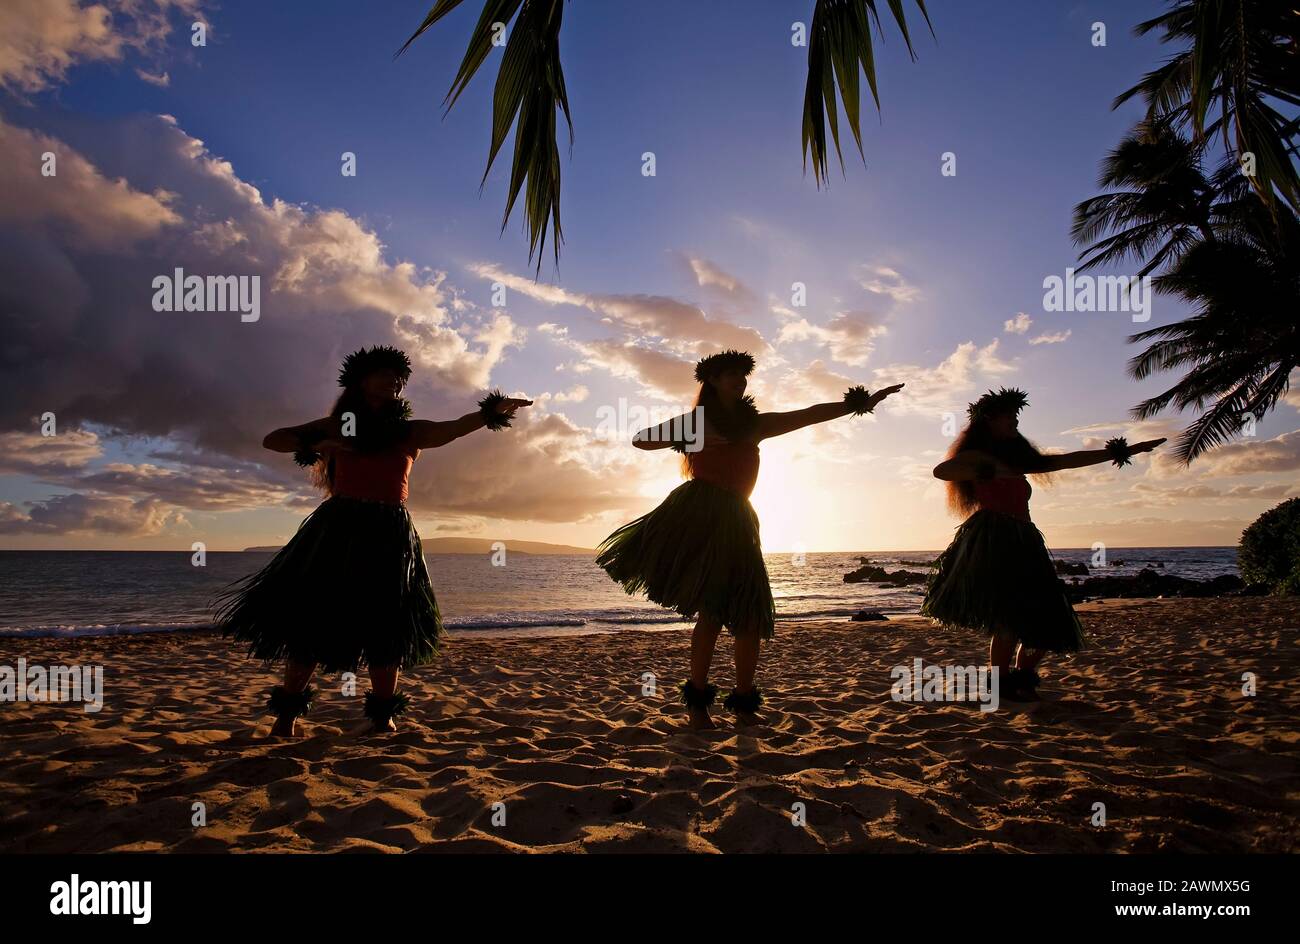 Three hula dancers at sunset at White Rock, Palauea, Maui, Hawaii Stock Photo